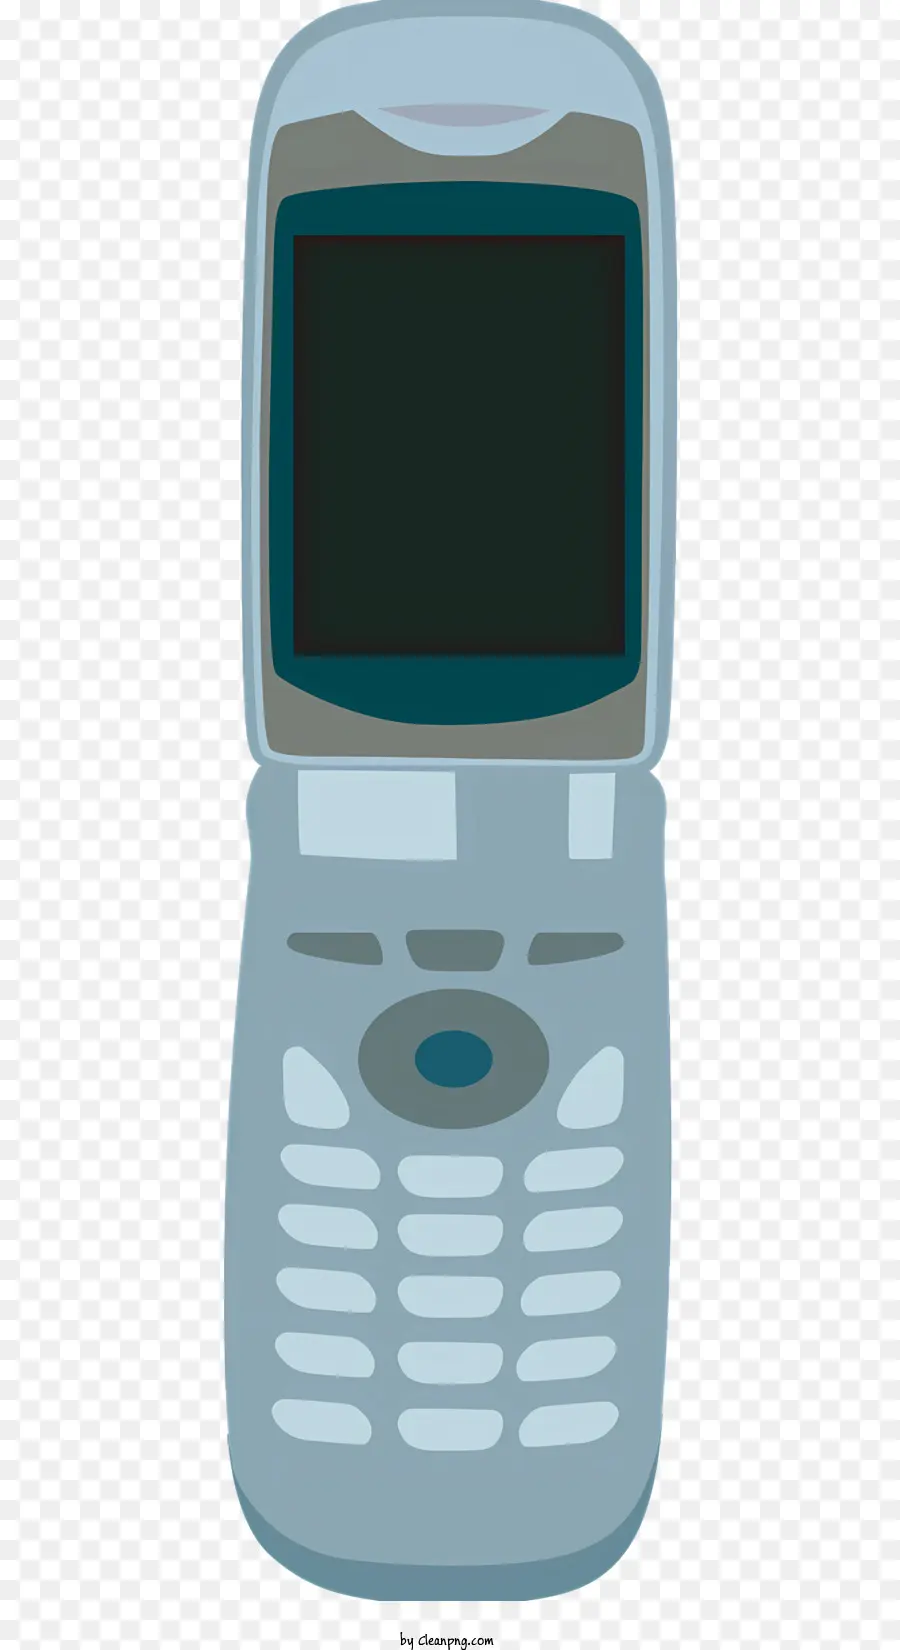 ICON Portable Electronic Device Dispositivo portatile Chiamata per cellulare messaggi di testo - Dispositivo elettronico piccolo e non funzionale con schermo bianco